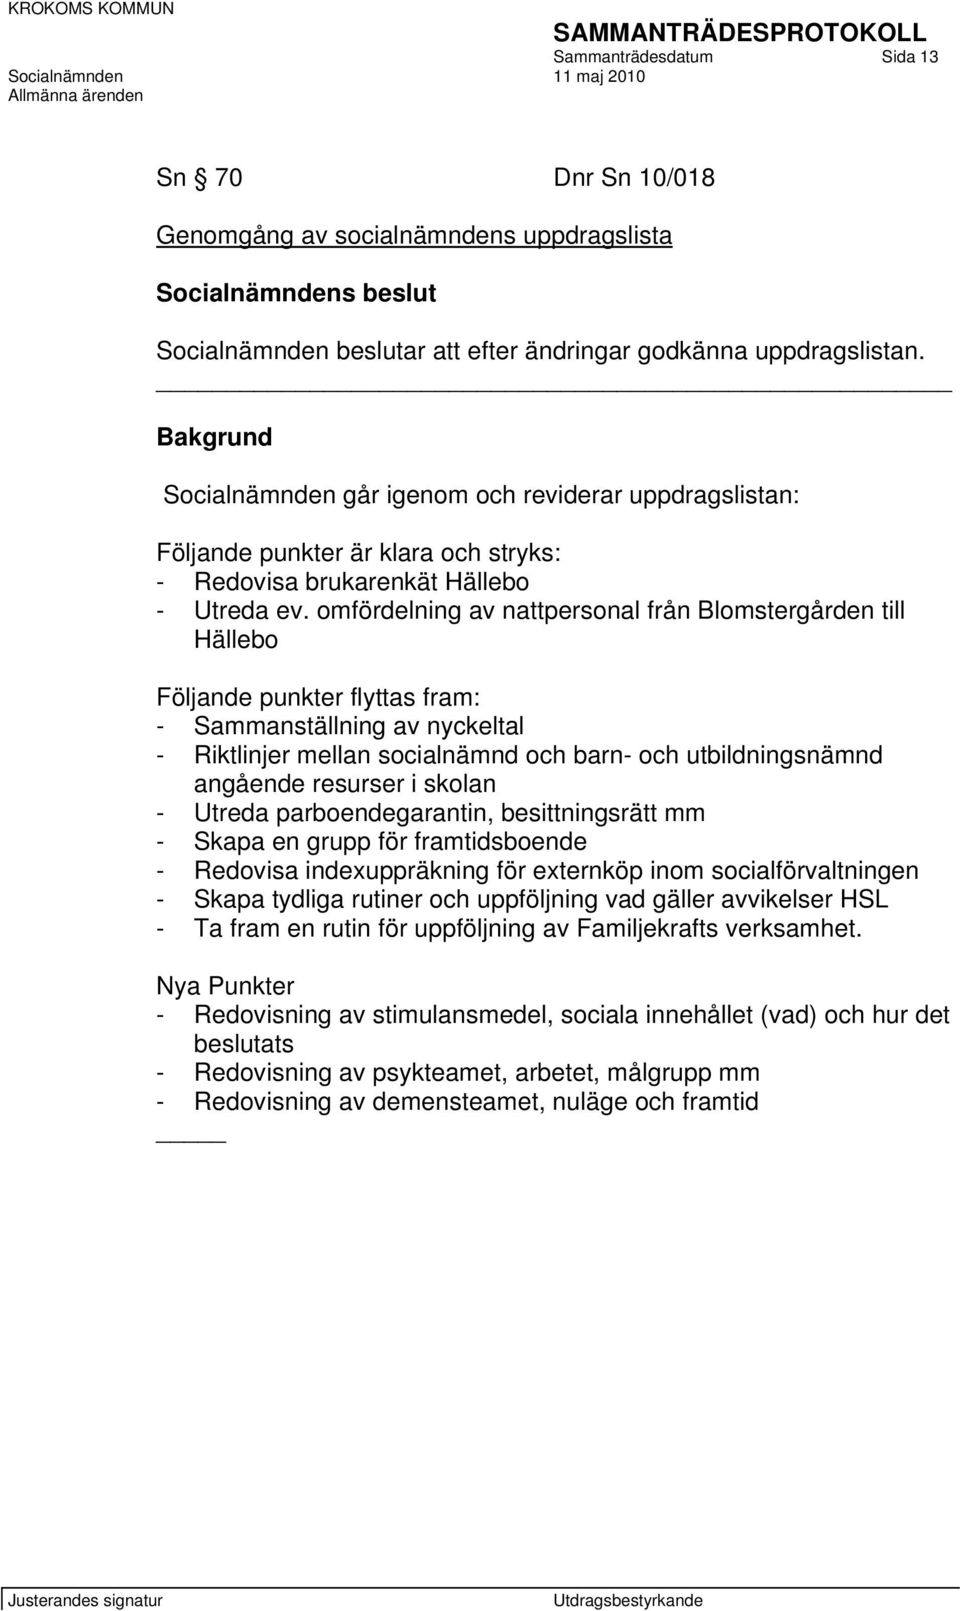 omfördelning av nattpersonal från Blomstergården till Hällebo Följande punkter flyttas fram: - Sammanställning av nyckeltal - Riktlinjer mellan socialnämnd och barn- och utbildningsnämnd angående